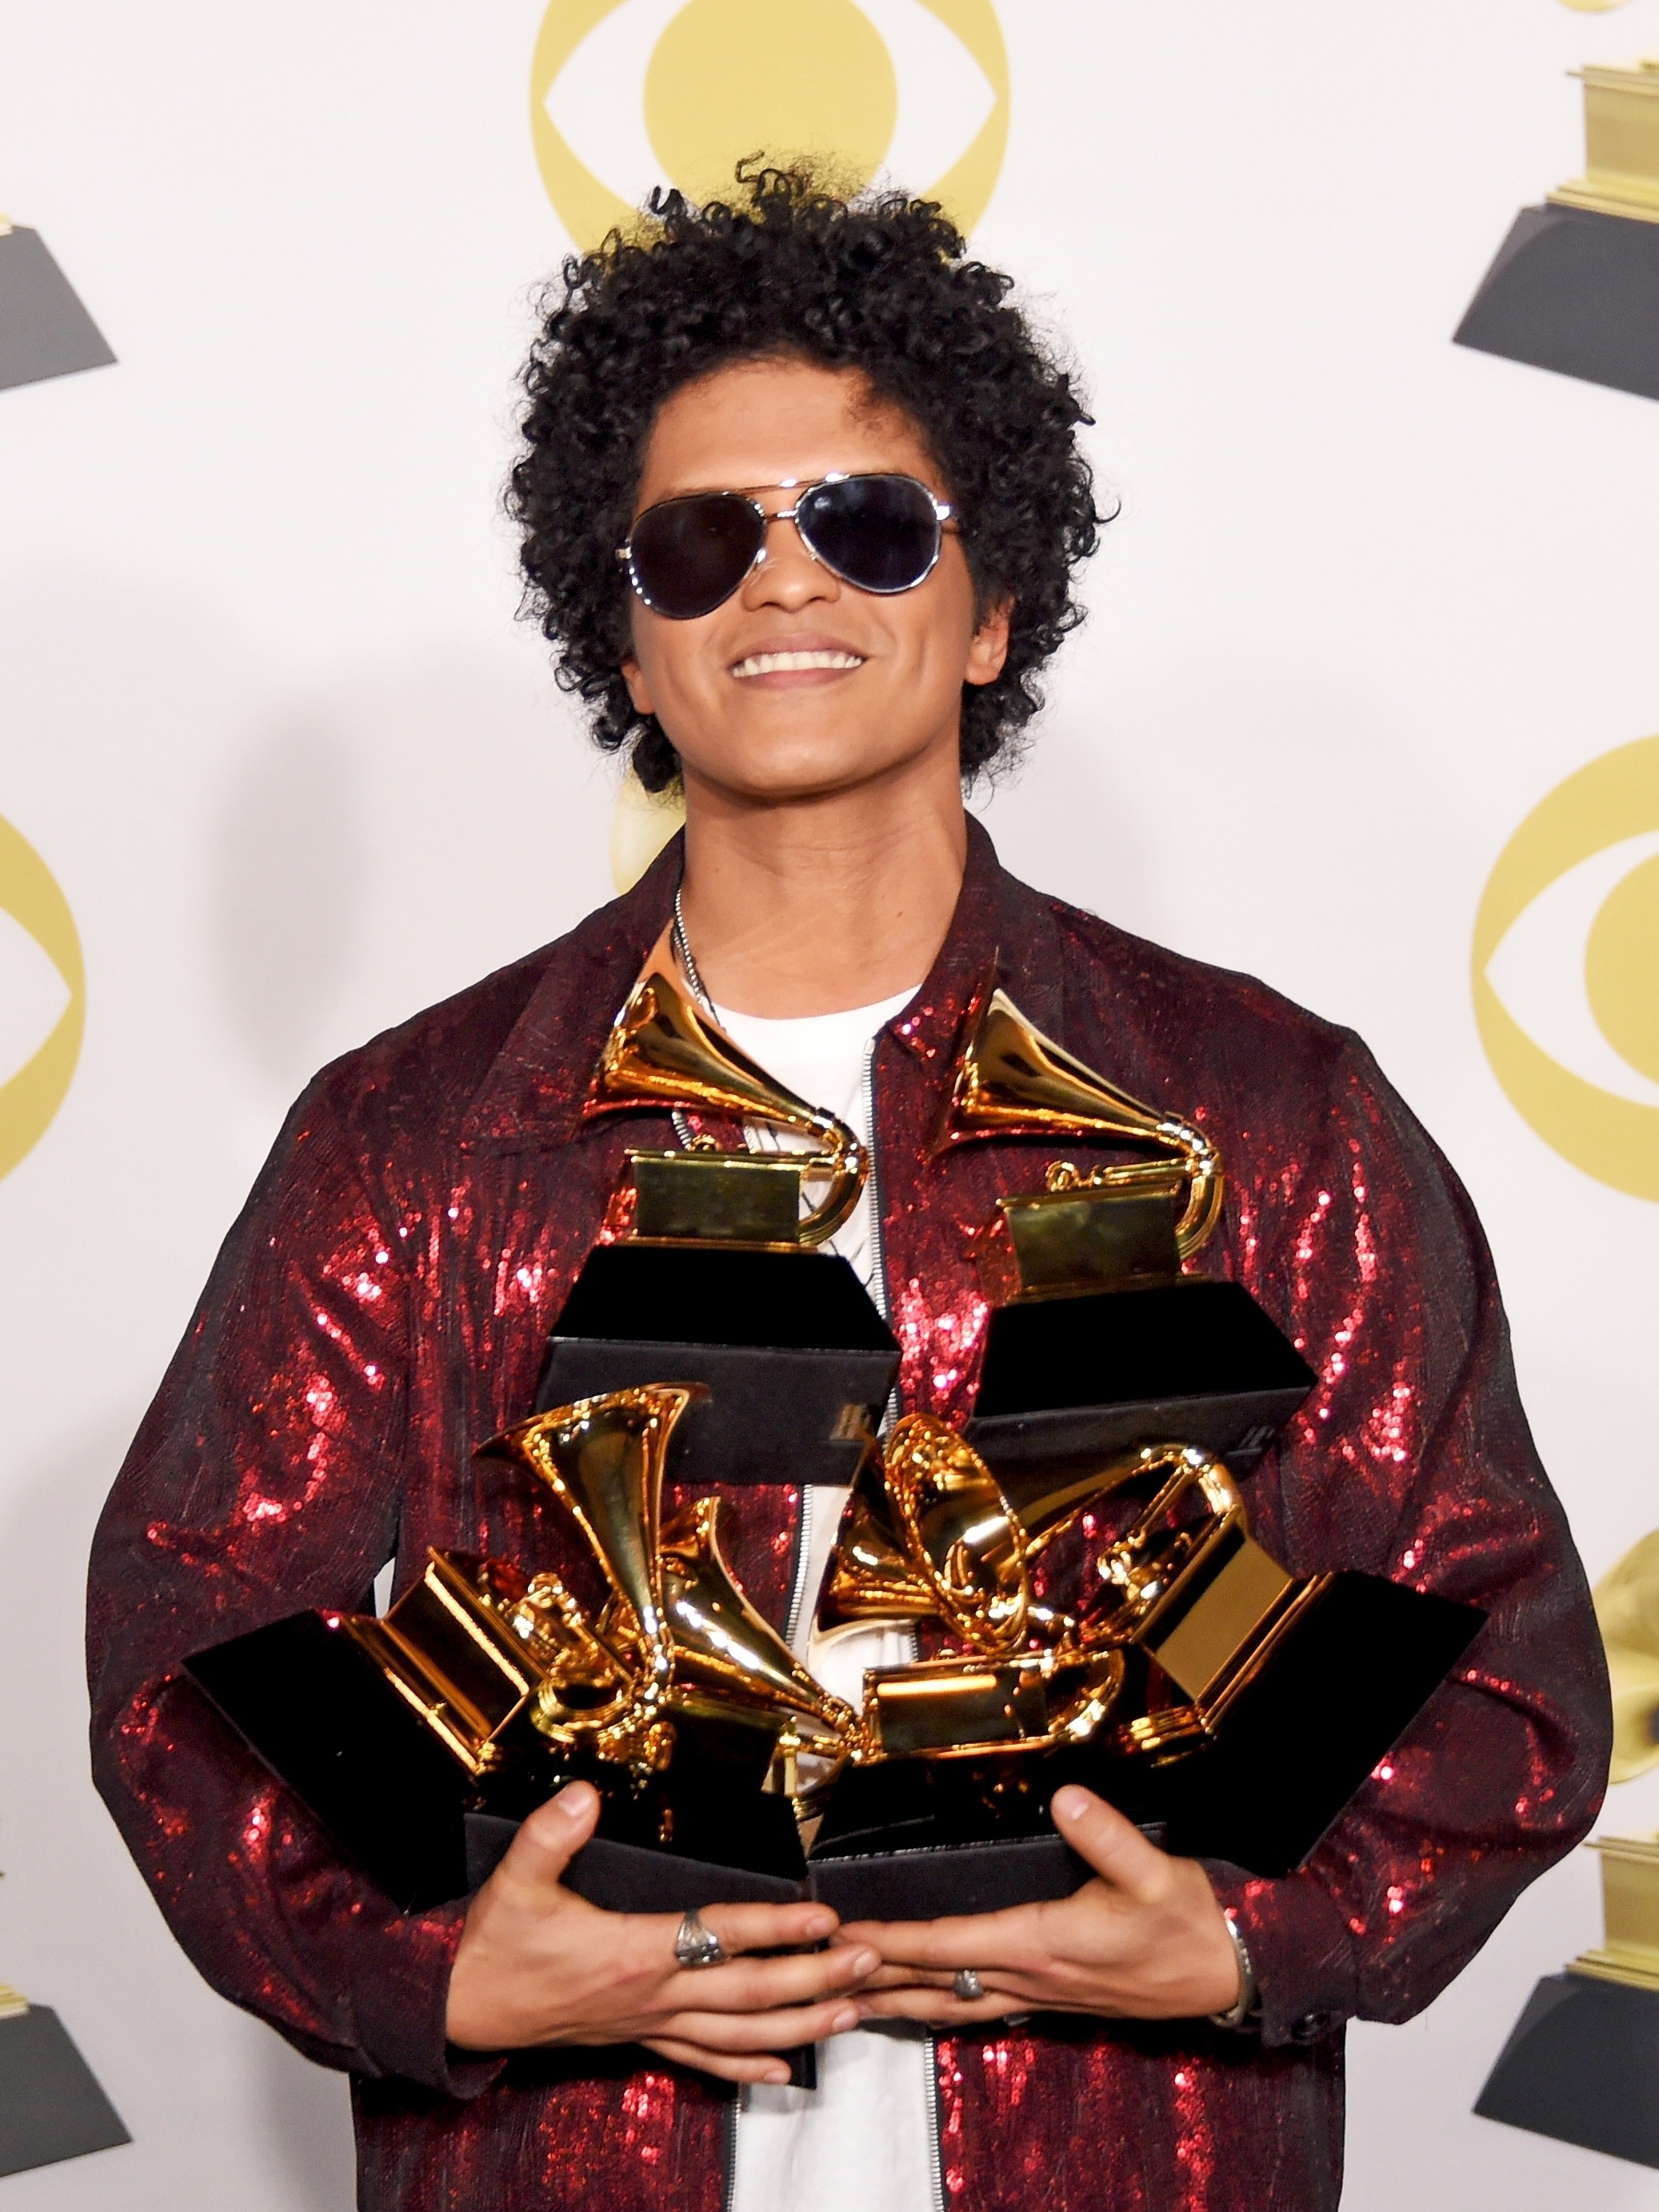 5 momentos (mais) fofos de Bruno Mars no Europe Music Awards